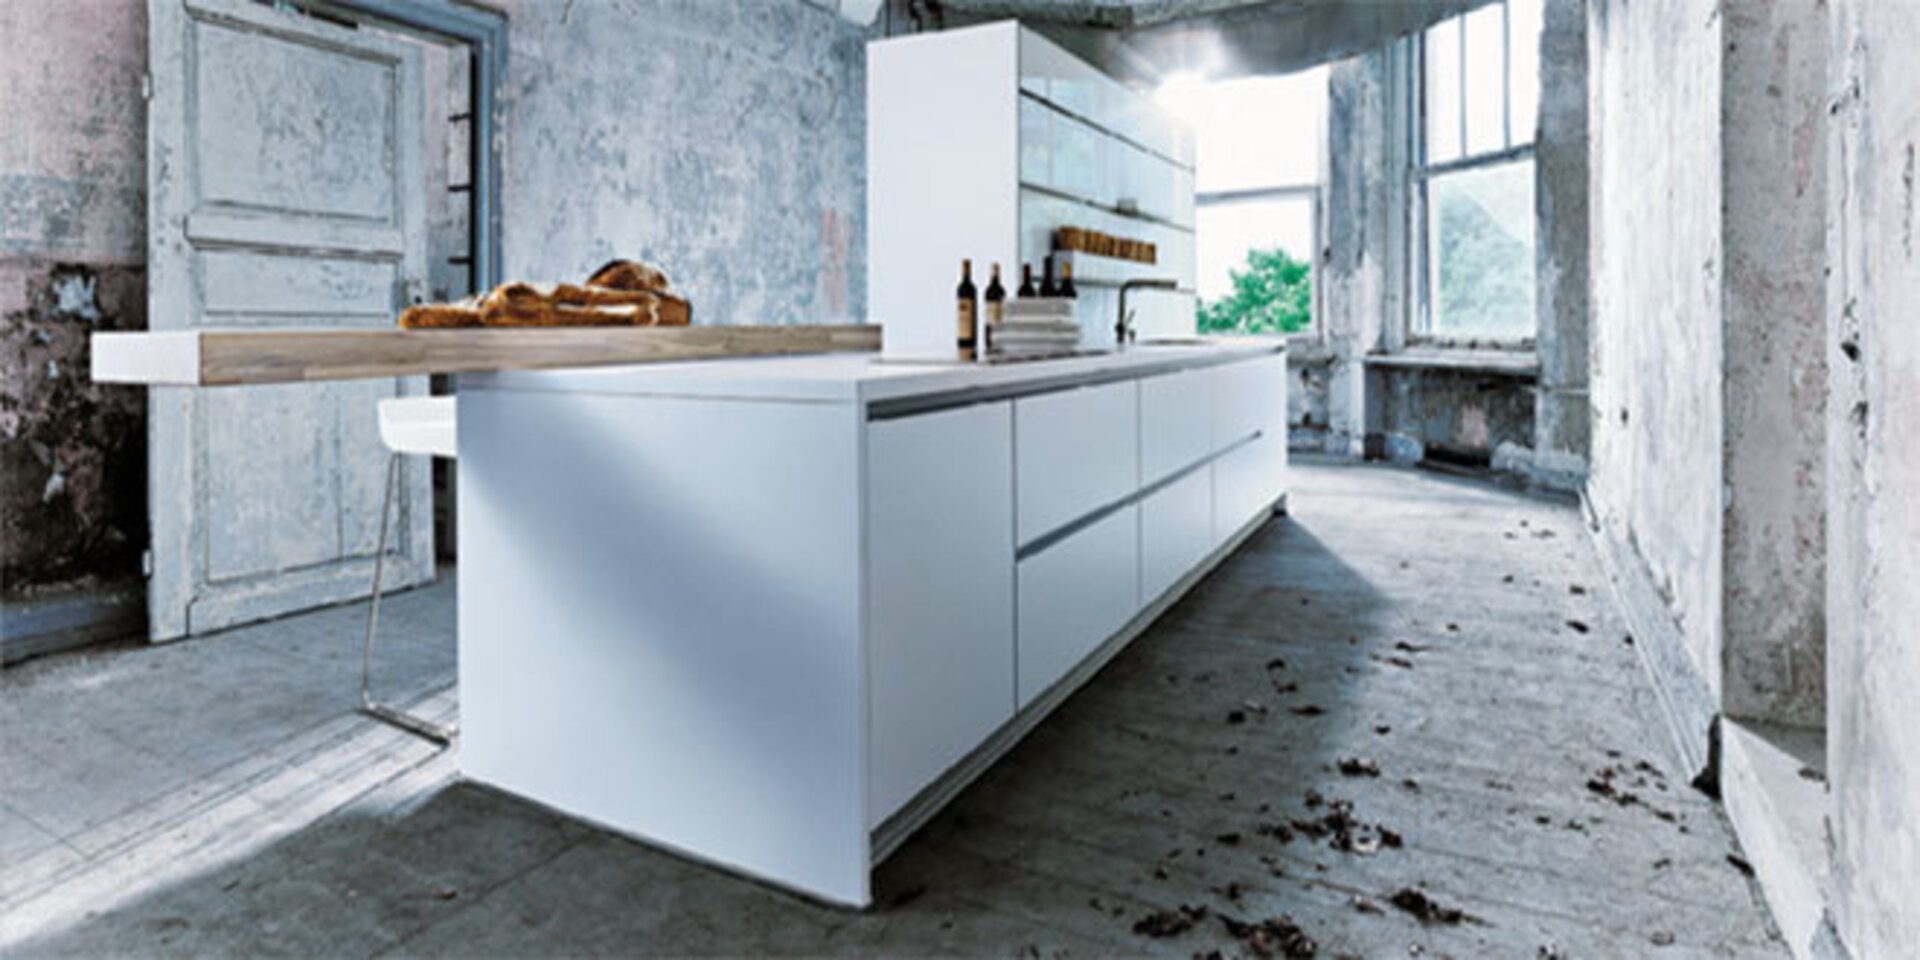 Titelbild der Premium-Küchenmarke next125 zeigt eine weiße Kücheninsel.